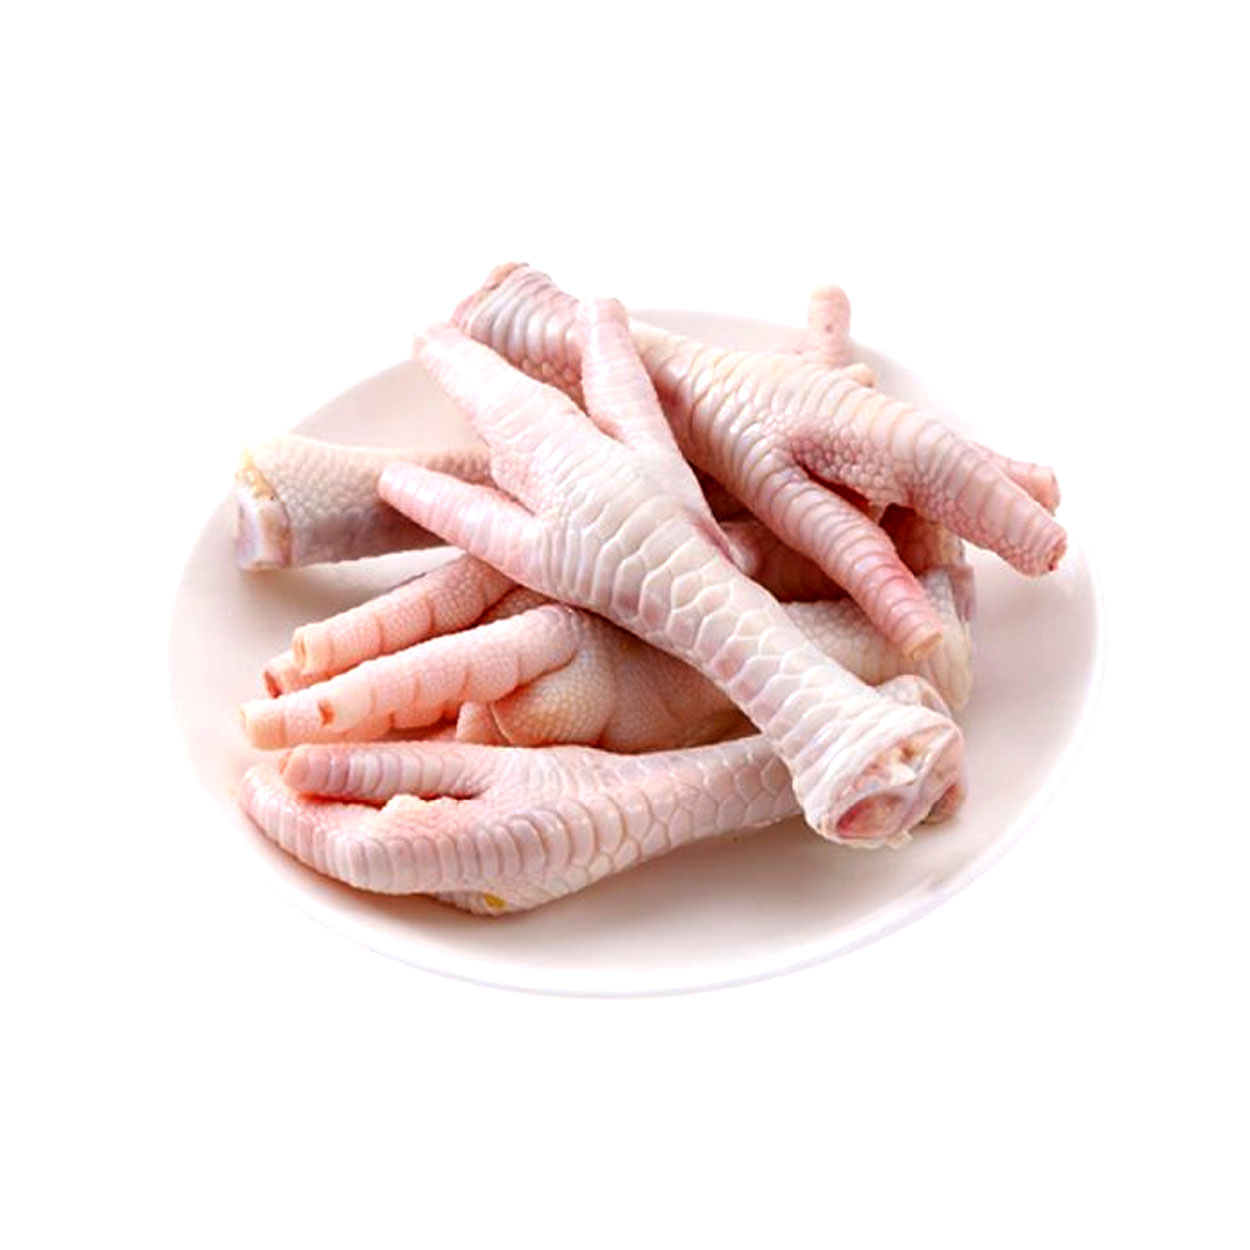 Kaki Ayam 1kg - Kedai Matdespatch